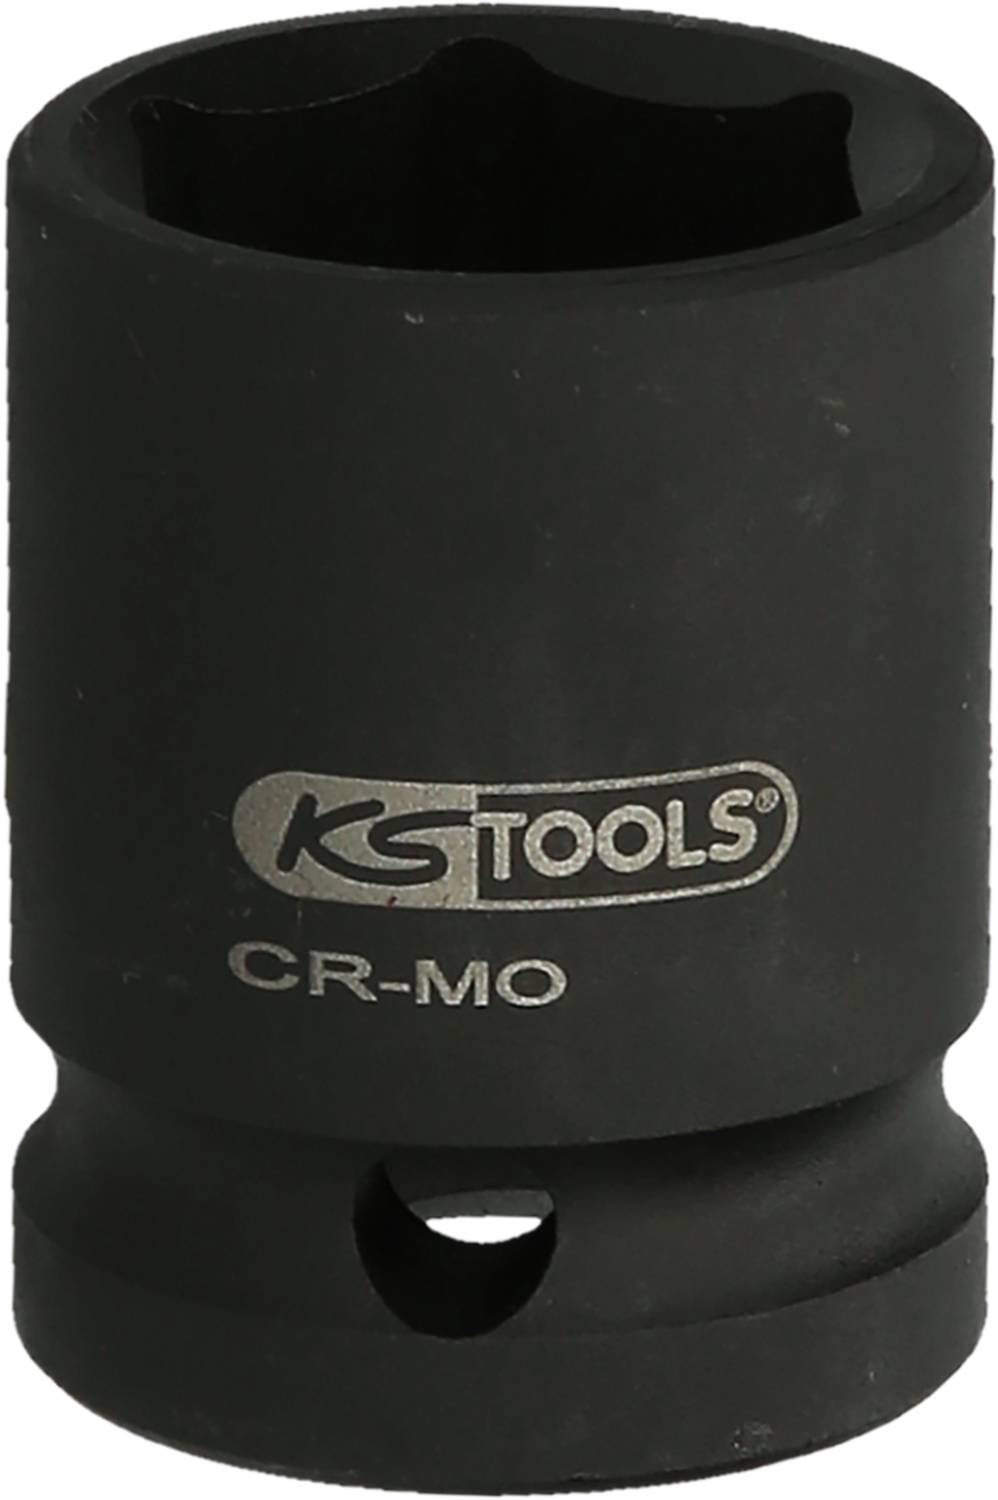 KS TOOLS Werkzeuge-Maschinen GmbH 1.1/2\" Sechskant-Kraft-Stecknuss, 45 mm, kurz (515.2240)